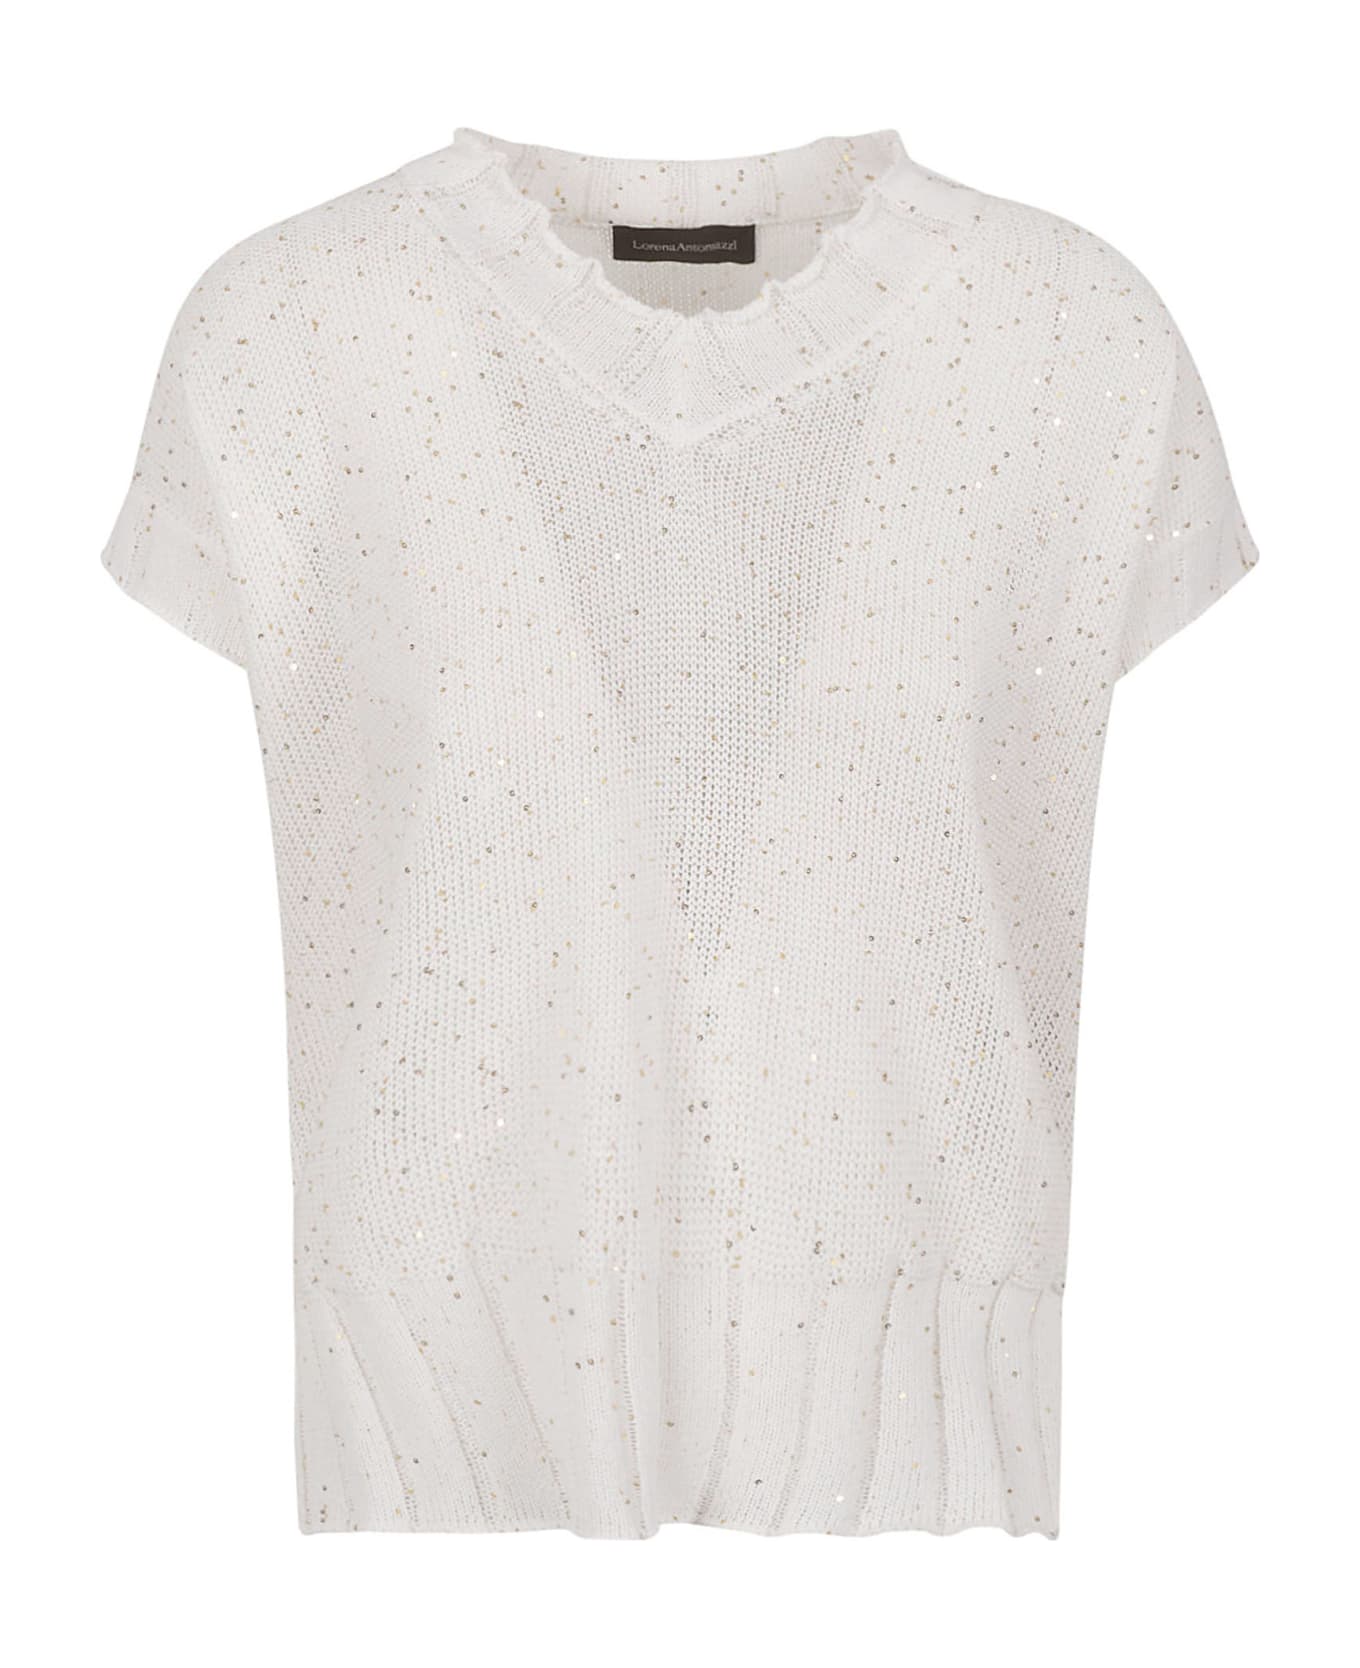 Lorena Antoniazzi Side Slit Embellished Knit Top - White